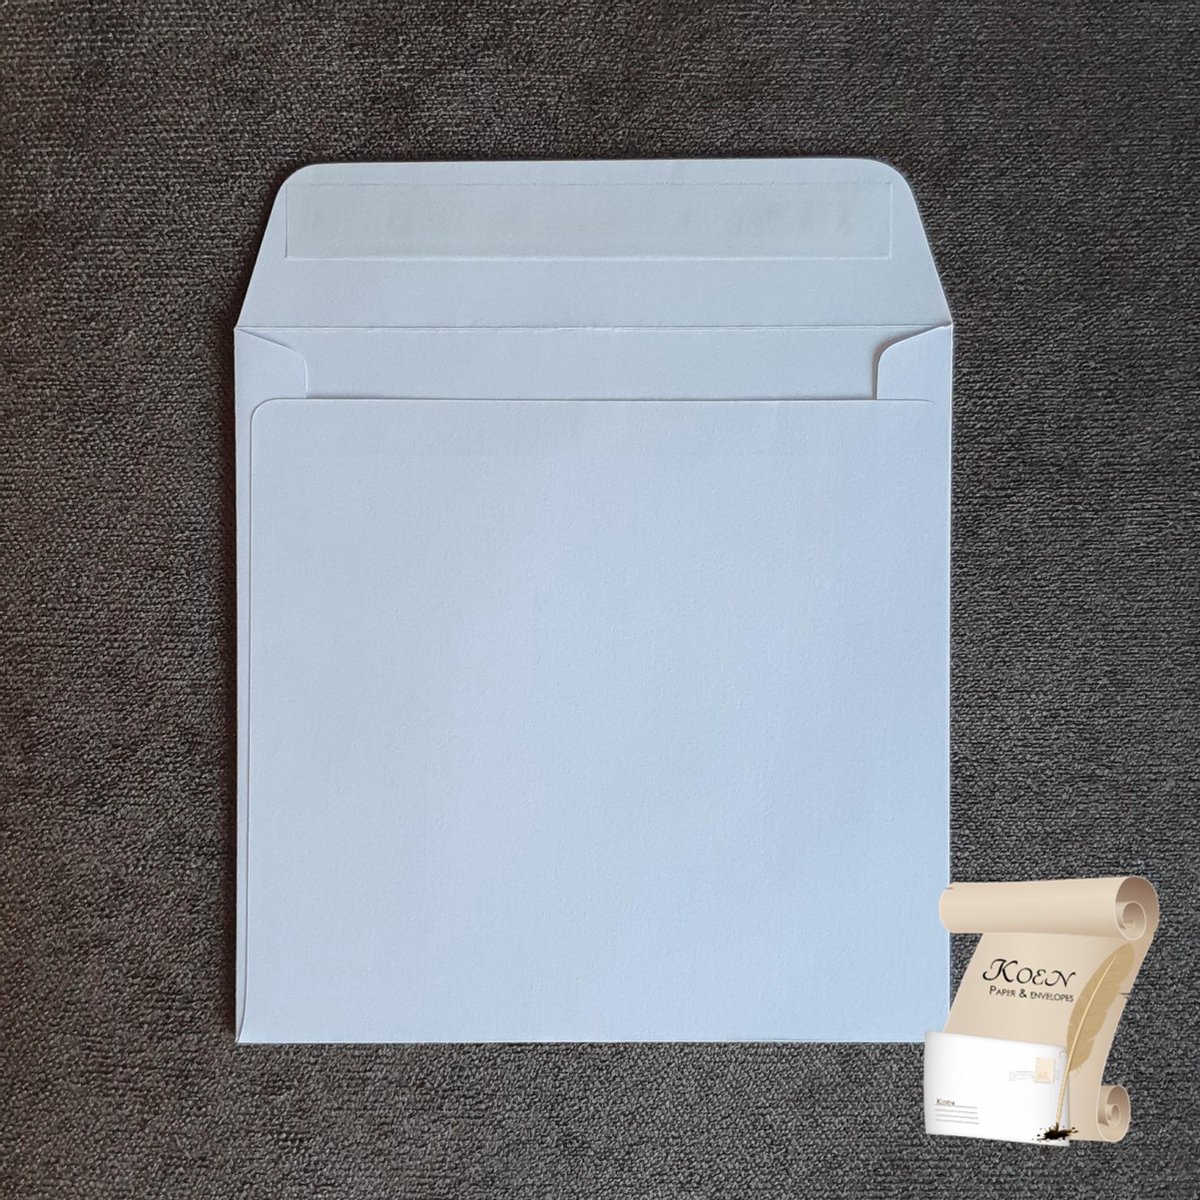 Enveloppe carrée (blanche) (155 x 155 mm) - 120 grammes avec